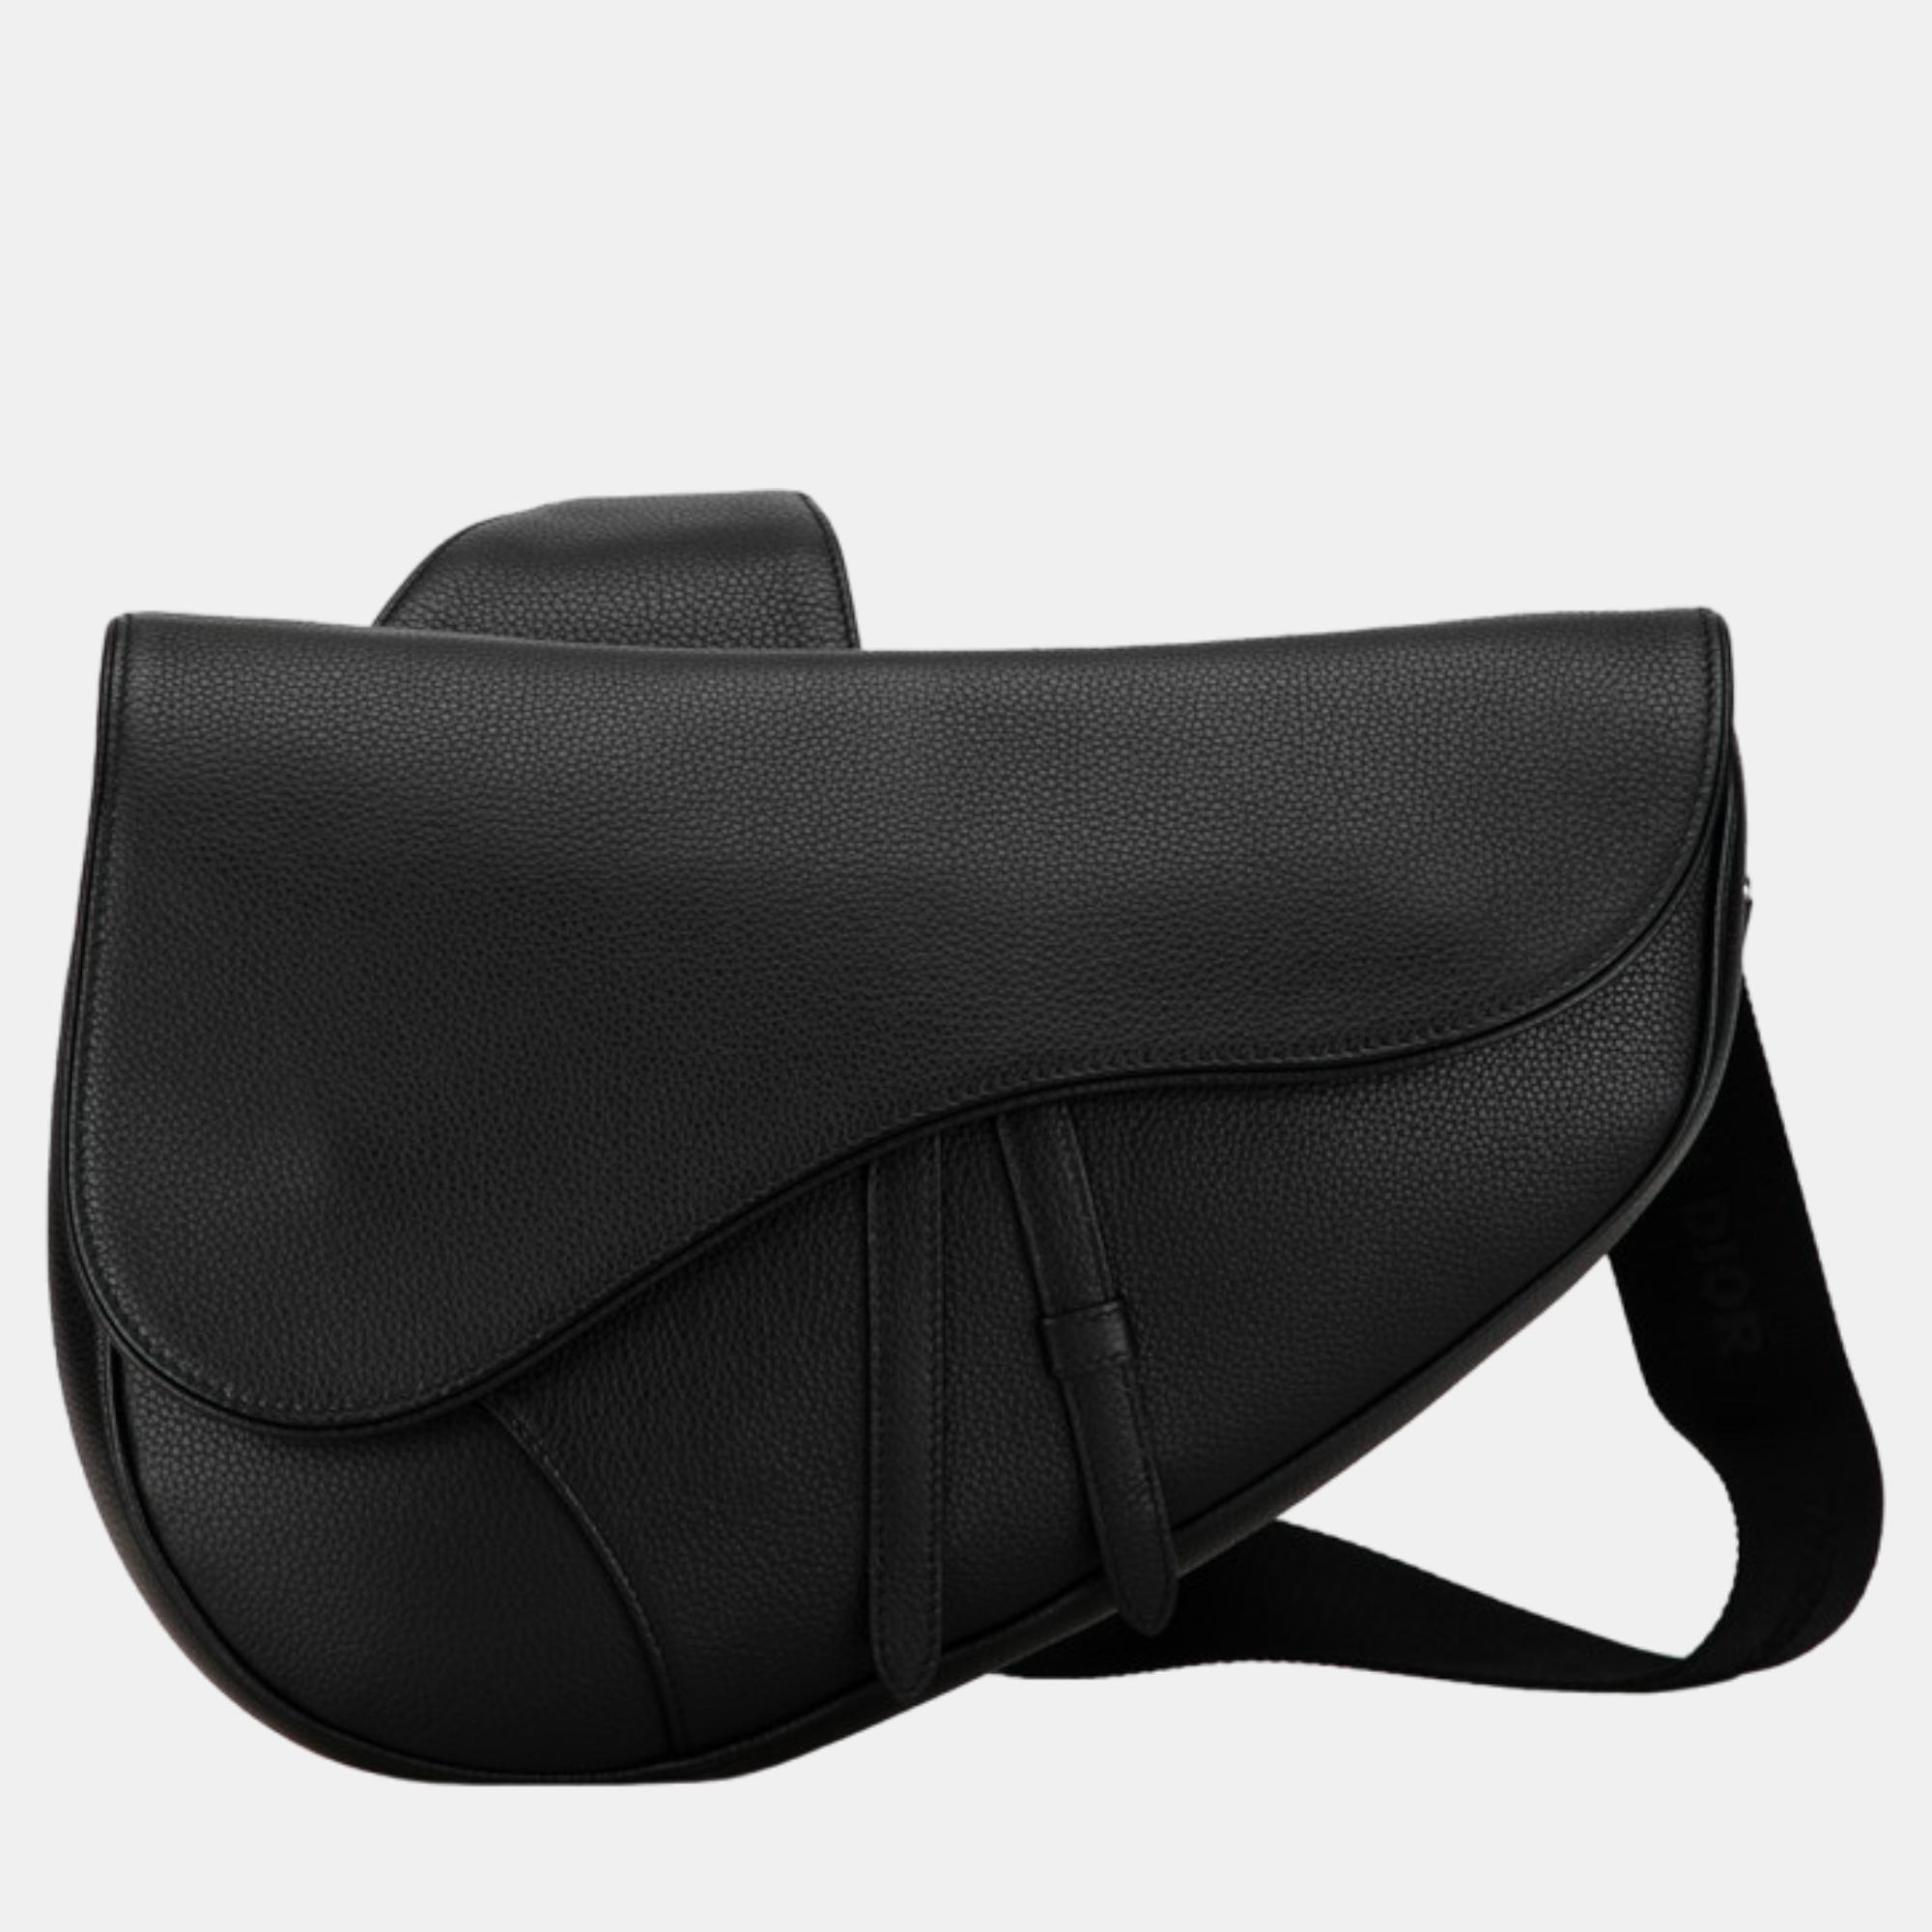 Dior black leather saddle bag